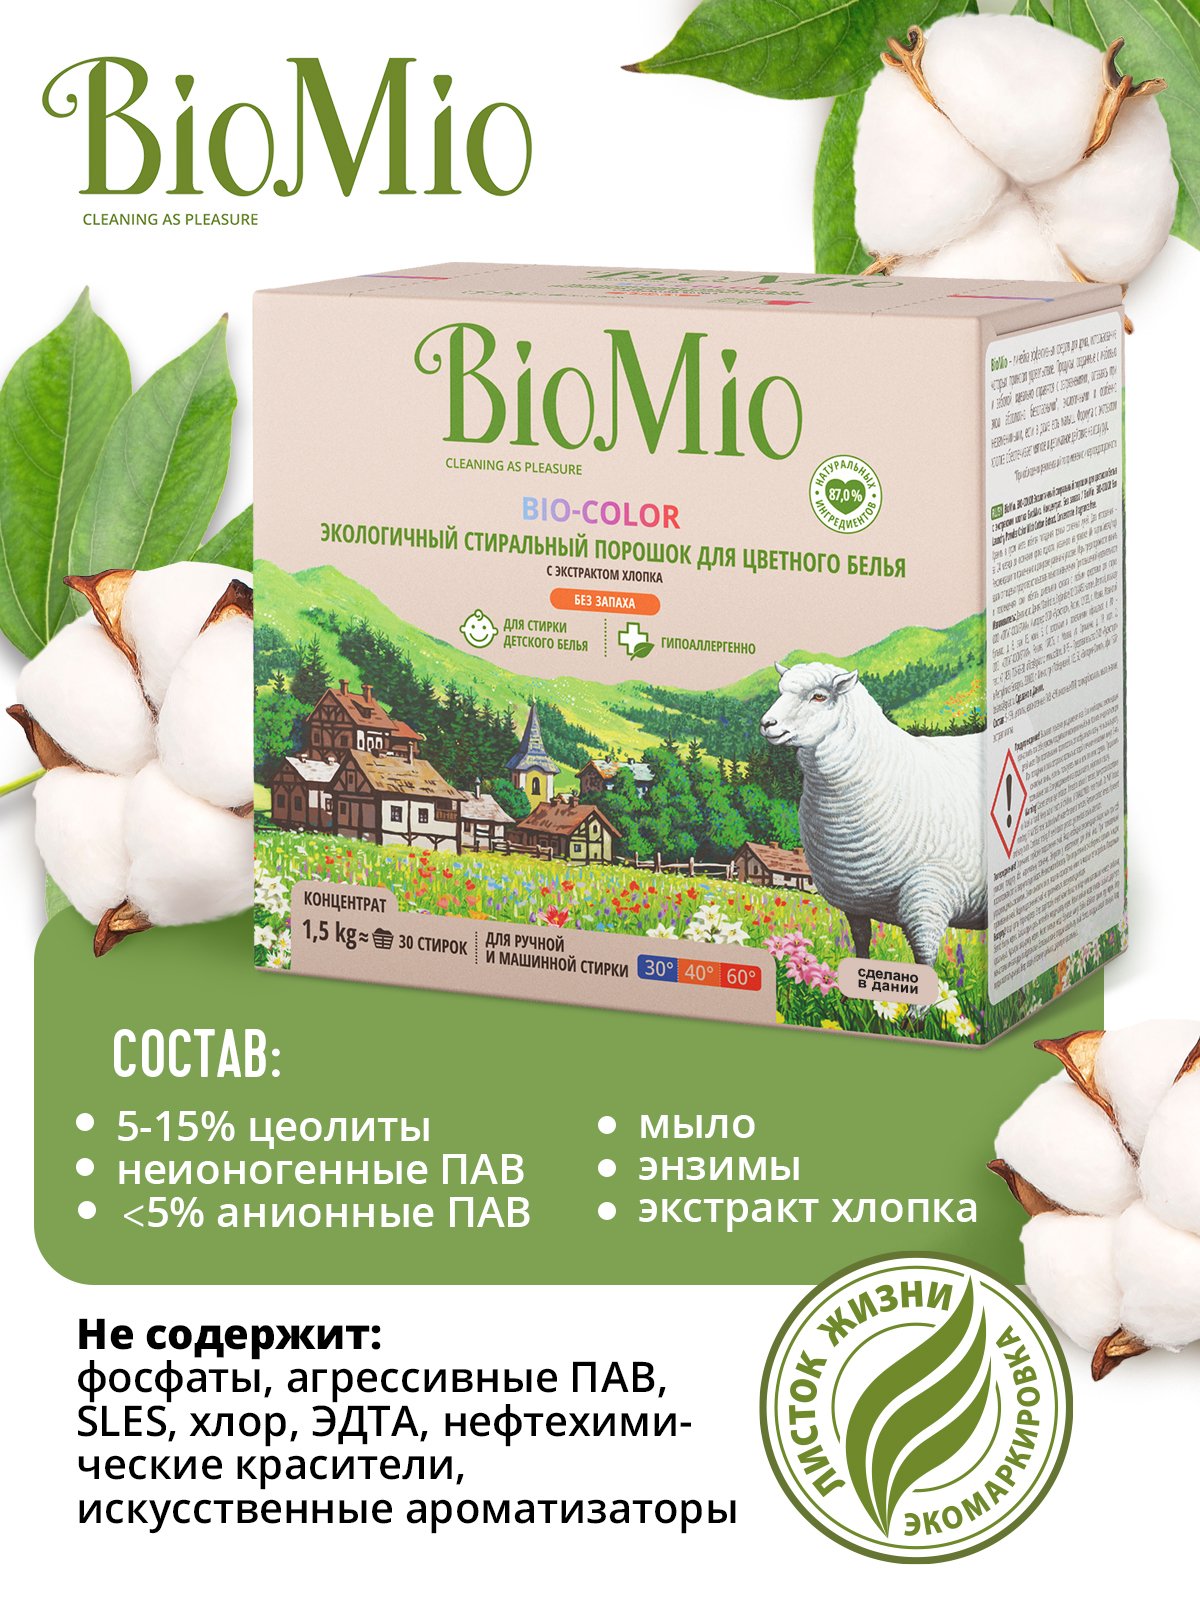 Стиральный порошок для цветного белья BioMio Bio-Color, концентрат, 1,5 кг - фото 5